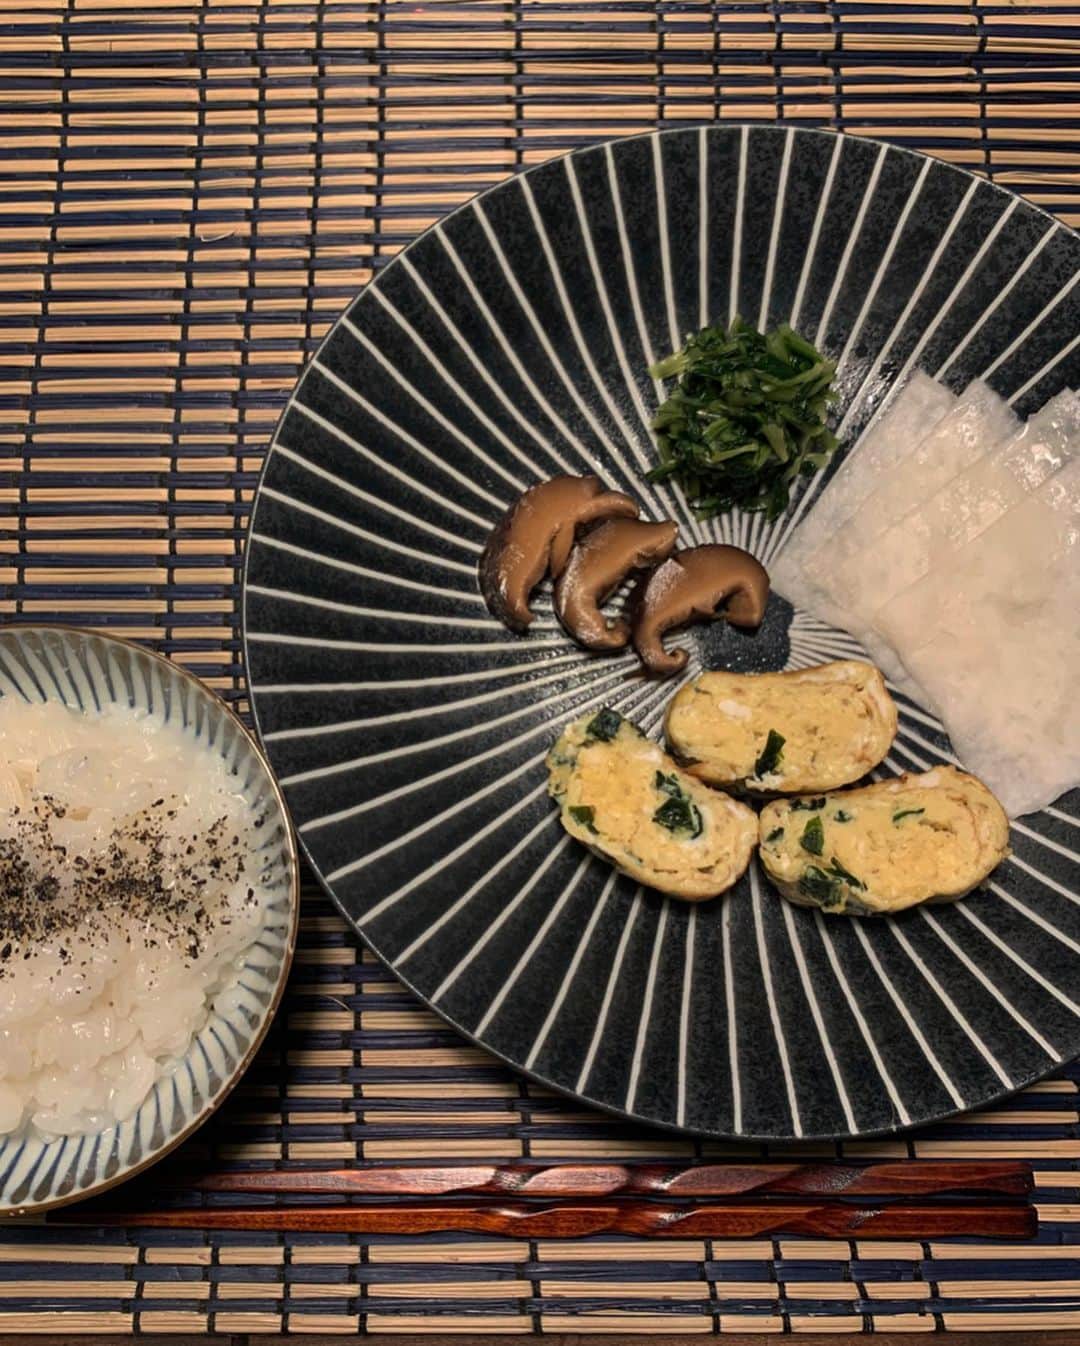 岡清華さんのインスタグラム写真 - (岡清華Instagram)「#和ーユルヴェーダ 👘 NYから戻ってきてからめっきり和食にハマっている私。  新しくリリースする商品/レシピを考案中で、ちょうど良い機会だったこともありますが、日本の食材を改めて見直してみるとやはり日本の素晴らしさを再実感。  アーユルヴェーダは5000年前から続くインド発祥の伝統医学…というと、 ☝️インドのものだから日本に合わないんじゃないの？ ☝️昔のものだから現代には合わないんじゃないの？ .  というお声を頂きます。 私はアーユルヴェーダと言うものは、命あるものが、協調し合って、全ての個々がより良く生きる為の "生活の知恵"。 ...まさに絶対的な自然の法則だと考えています。 .  その訳は、 物事は常に変動するもの。 そして、その変動に順応するべく術を教えてくれる知恵こそがアーユルヴェーダだからなのです。 .  インドと日本は、気候も文化も人種も性質が違う。だからその性質の違いを考えて、生活全てをその土地に、人種に合わせて考える。  また、時代に合わせて変わりゆく環境にも、どのような性質に変化しているかを考え、バランスをとり順応できるように考える。 .  5000年もの深い歴史の中で継承され続けていた伝統医学は、このように幾つもの形を変えて、時代に、国に、人に、全てに順応して、その全てとの調和関係を保ってきました。  私達現代人が持つ不調和を解消するには、この極めて本質的な自然の法則を理解することで、調和へのカギだと信じています。 . .  1枚目は、遅くなった日の晩御飯。 @alohafarm さんの爆笑米、@bugrassfarmers さんの放飼玉子を使った雑炊。  大分県の干し椎茸を、納豆のおじいちゃんのお店の醤油ときび等で煮ただけの椎茸の煮付けがトリュフ以上に美味しく驚愕。この椎茸の戻し汁と岩塩だけでお粥をつくりました。高菜と千枚漬けは、京都からのいただきもの。  消化を高めるために、このお椀を食べる前に生姜1スライスに、岩塩とレモン汁をかけたものをよく噛んで食べました。(消化促進のアパタイザー) .  2枚目は、 上記の食材でアレンジした次の日の昼御飯。卵焼きにワカメを入れました。爆笑米は、爆笑してしまうくらい美味しい。そして、椎茸は一晩寝かせたら味が染み込んでまたトリュフ感がでていました。  3枚目は、またまた頂き物の、新鮮なイクラ。ワカメは、先日の椎茸の煮付けの汁で戻して、その上にオリーブオイルをかけました。魚卵は海藻と合いますね。 . . . . . ...など、一つもこだわらない食材、調味料など一切ないと胸を張って言えるほど、全て天然で、生産者さんの想いが込められた感動の食材ばかり… 材料そのものがパーフェクトなものばかりだと、外食するよりも家で食べる方が遥かに感動と染み渡る美味しさと、食後の快適さ、湧き上がるエネルギーを感じます。  これらは頂き物以外全て、@farmersmarketjp にて出会ったものたちばかり。生産者さんと繋がれるこの素晴らしい機会のお陰で、私は食や生活がどれだけ豊かになったでしょう？  都内の中心に住みながら自然と調和したアーユルヴェーダの生活ができるのは、青山ファーマーズマーケットのお陰だと言っても過言ではない程感謝しています。 . .  私は食事を薬代わりに取り入れているので、食材に最もこだわりをもち、良い食材を手に入れるために、一番に時間とお金とエネルギーを注ぎます。  なぜなら食べているものが私達の身体と心と思考とエネルギーを作り、選択と決断と持久力に影響し、生活全ての基礎となり心と体の状態が決まり、その状態での毎日の繰り返しにより人生が決まるからです。 .  これ以上に、お金と時間とエネルギーをかけるべきものはありません。あとは睡眠と、頭も体もよく動かすこと。それだけのシンプルなことで人生が確実に輝くという本質を知っているからこそ、この根本の土台を作るに限るのです。 . .  土台を作れば、そのあとはエスカレーター式に全てがコントロールされていきます。  食事、運動だけでなく、ビジネス、人間関係… 人の営み全てを解く、生き方の本質を教えてくれるアーユルヴェーダ。  様々なシーンに活かせば活かすほど面白く、更に他にも活かせるようクリエイティビティを与えてくれる素晴らしき知恵🙏  #ayurveda#アーユルヴェーダ#日本#和風#和食#和#調和 #米#晩御飯#定食#献立#レシピ」2月27日 0時29分 - okasaya